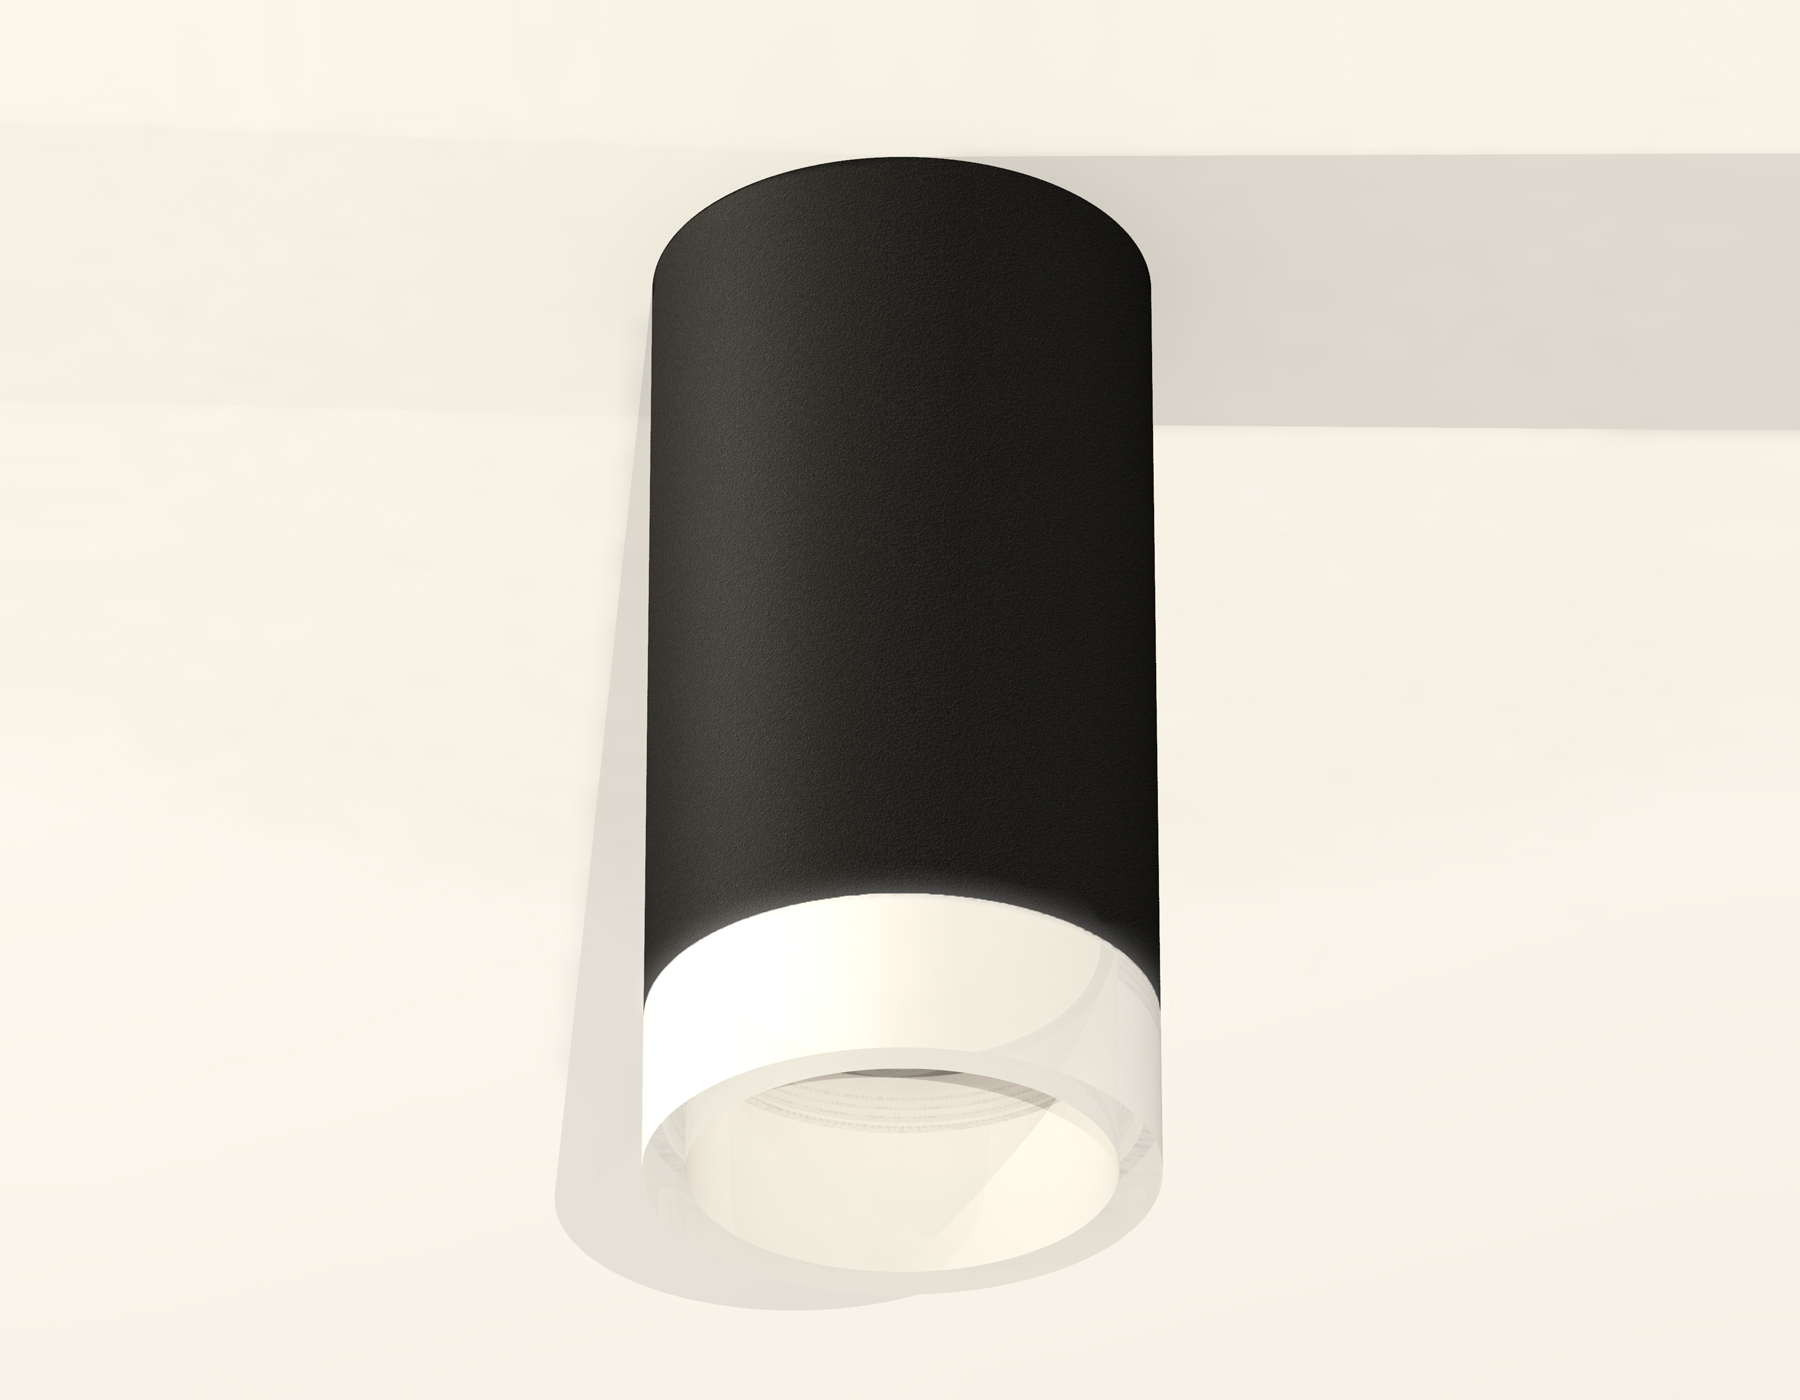 Потолочный светильник Ambrella Light Techno Spot XS6323041 (C6323, N6248)